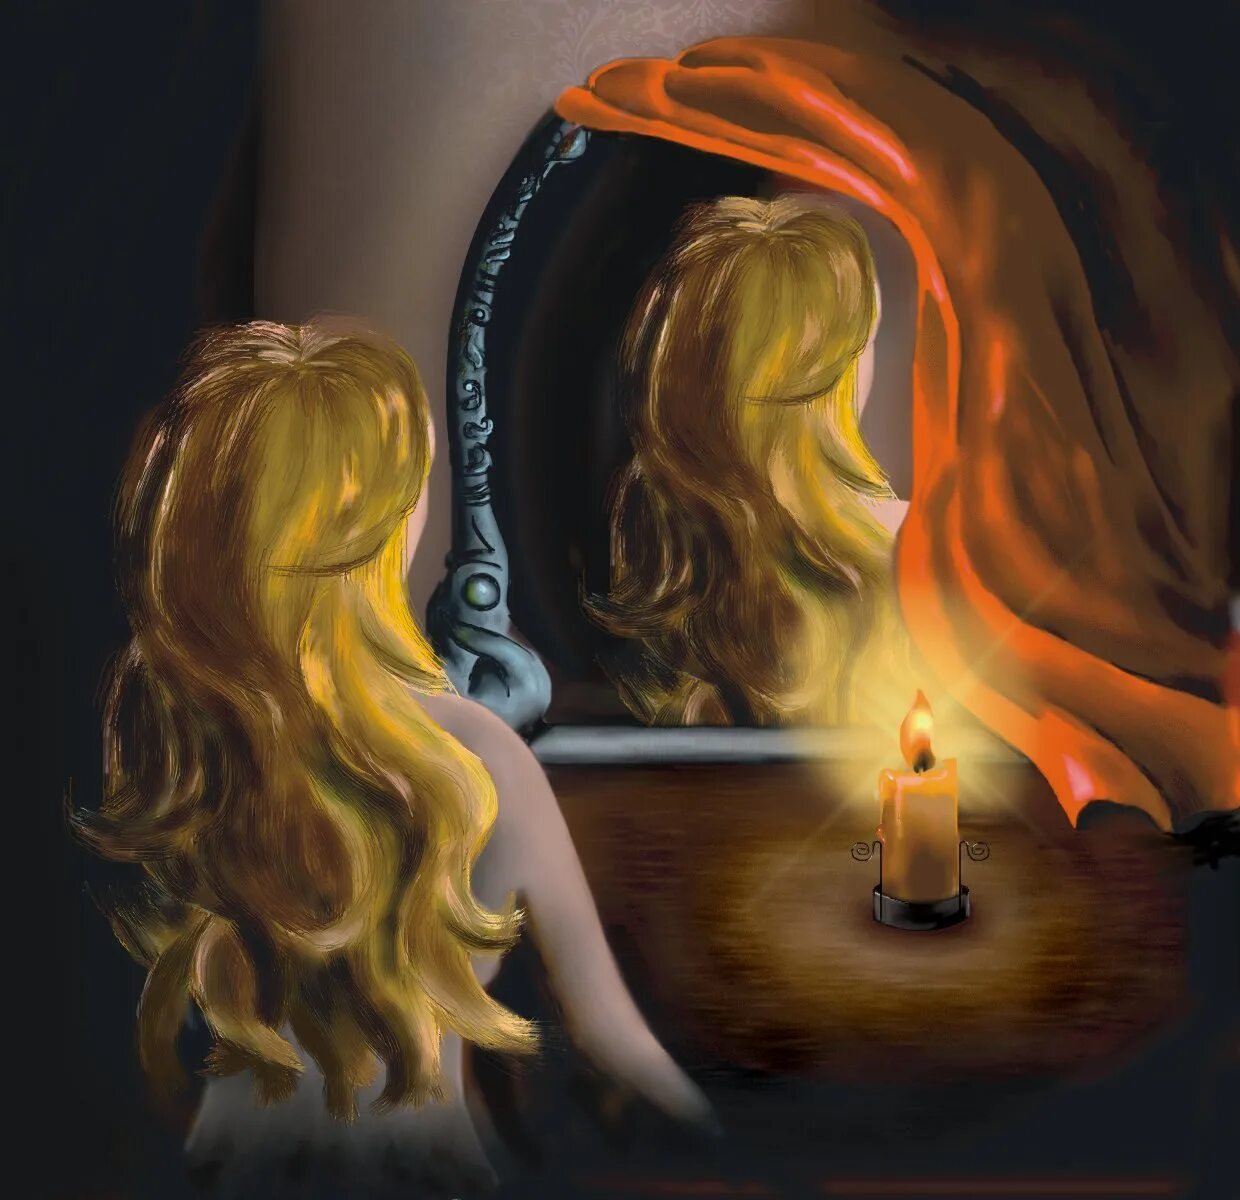 Свеча отражается в зеркале. Девушка свеча зеркало. Девушка со свечой арт. Девушка со свечой. Картина девушка со свечкой.